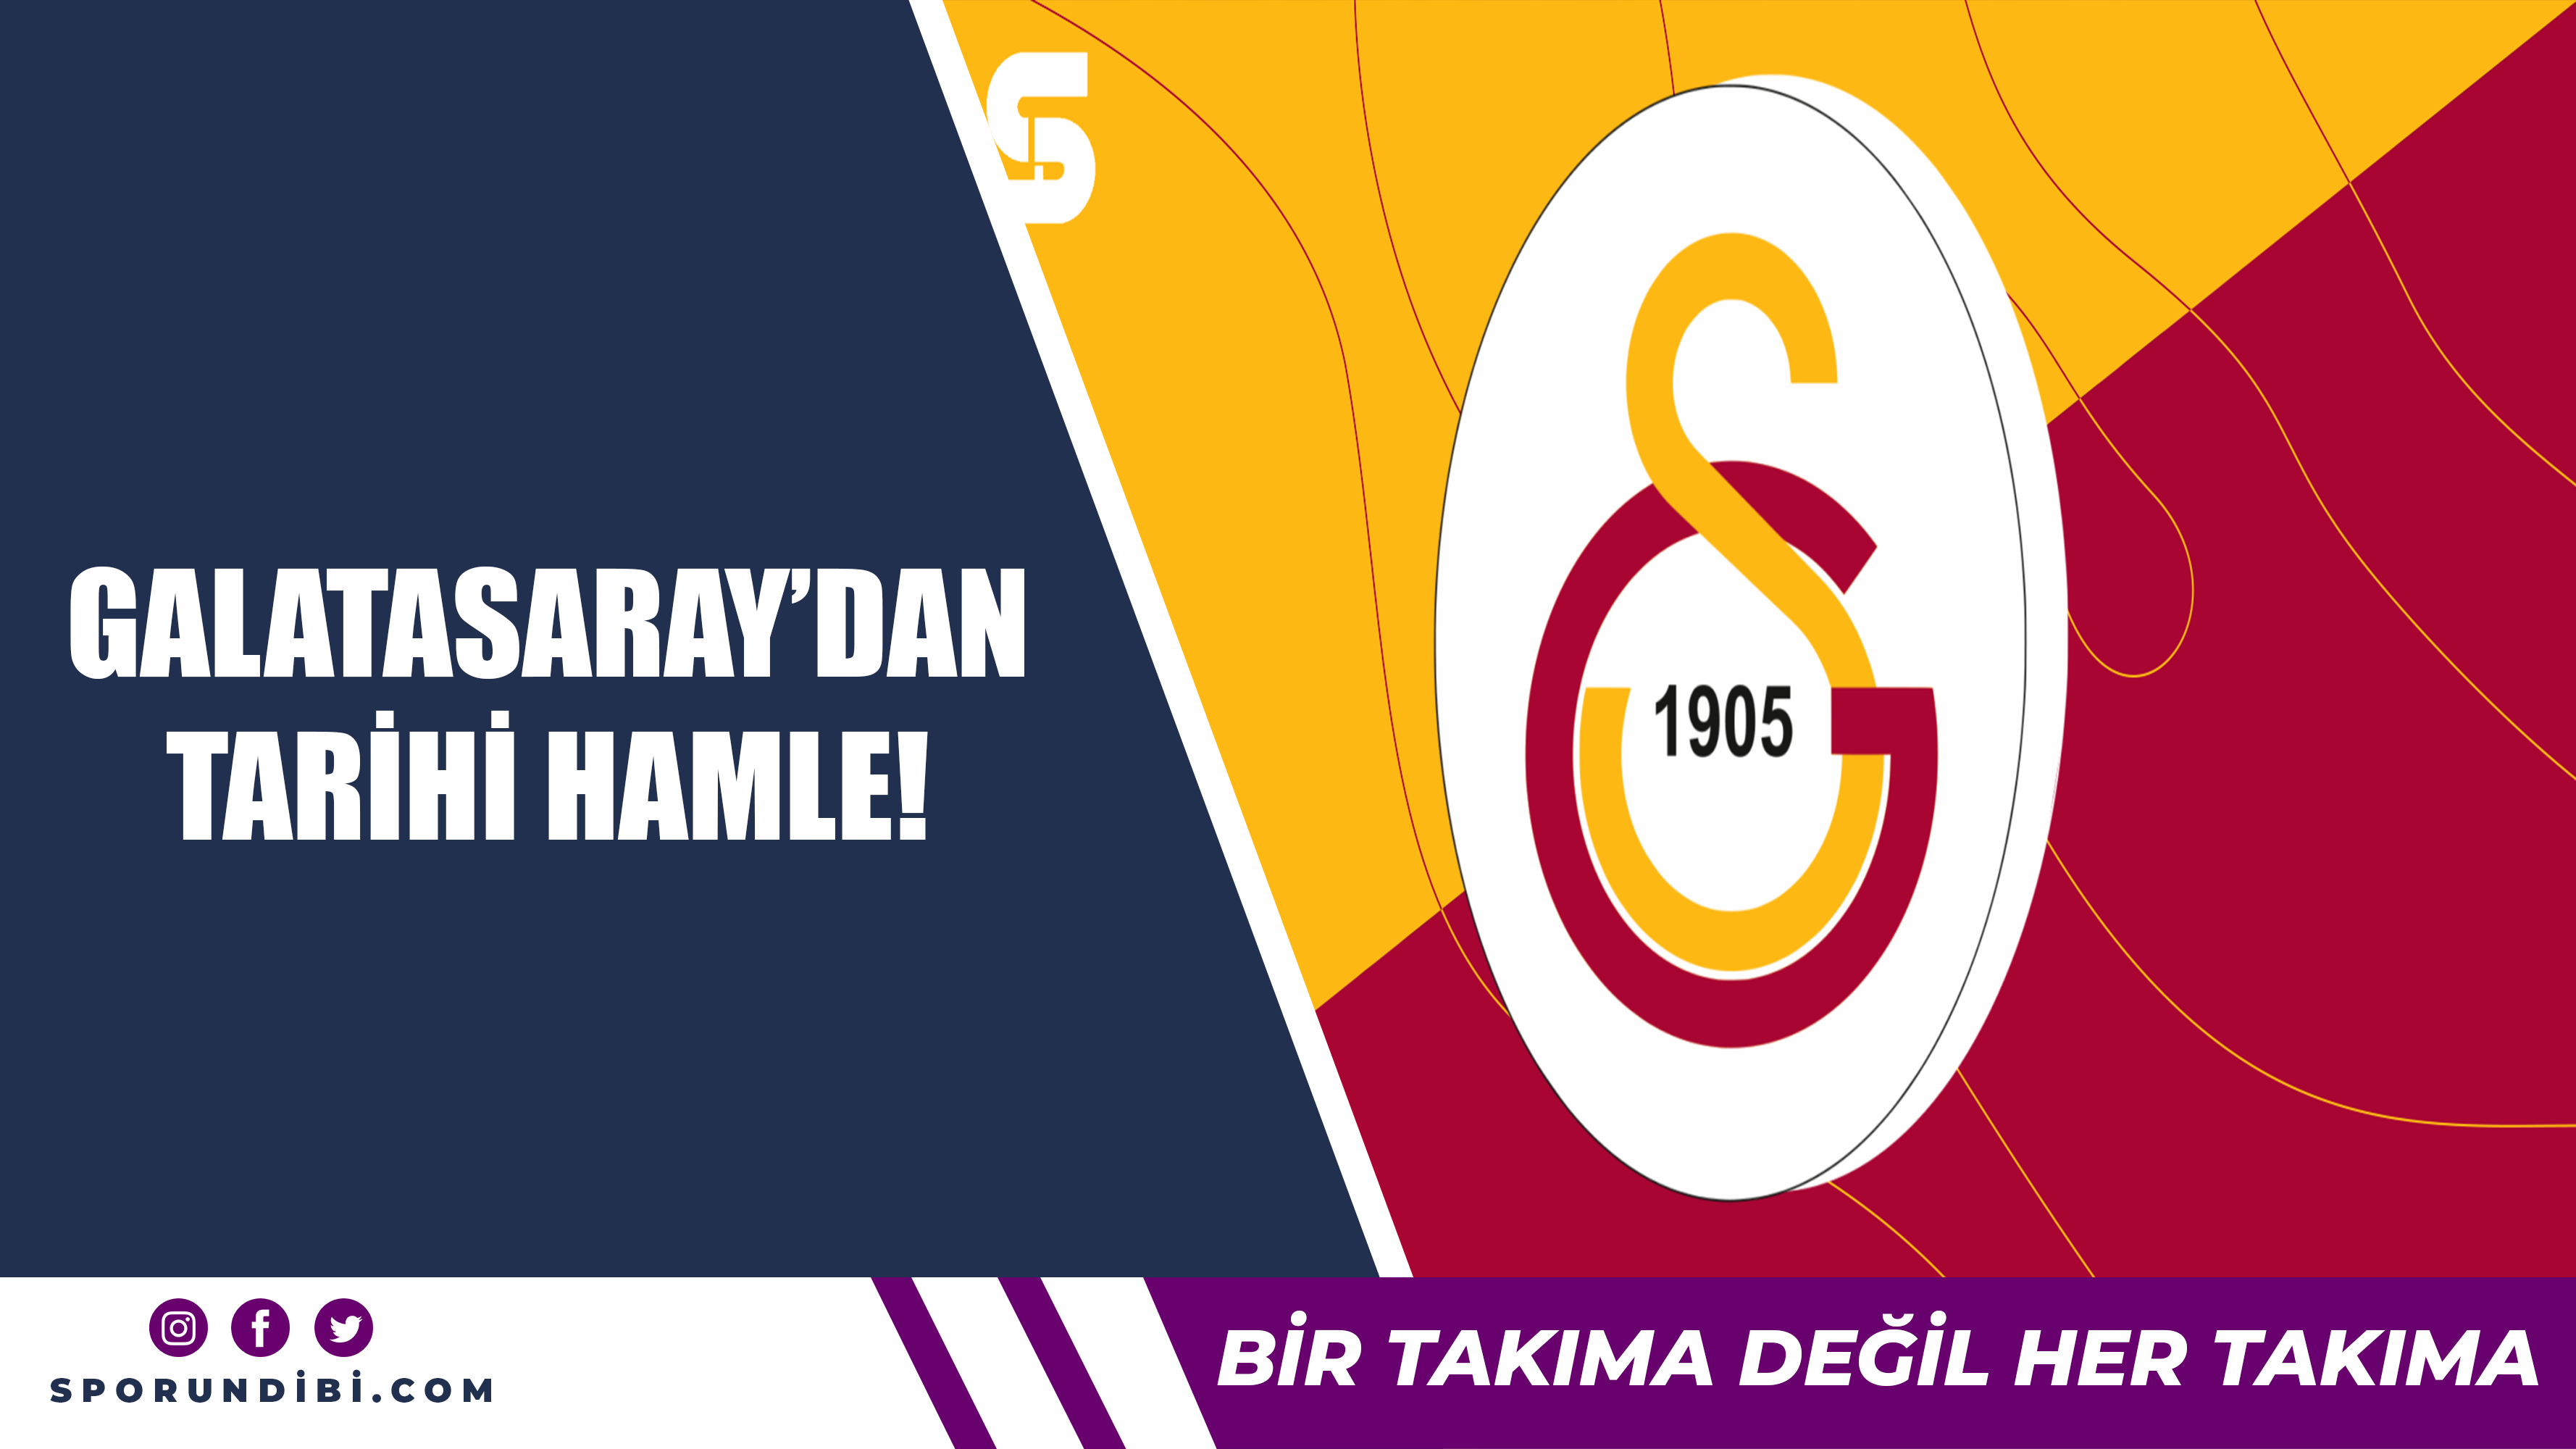 Galatasaray'dan tarihi hamle!